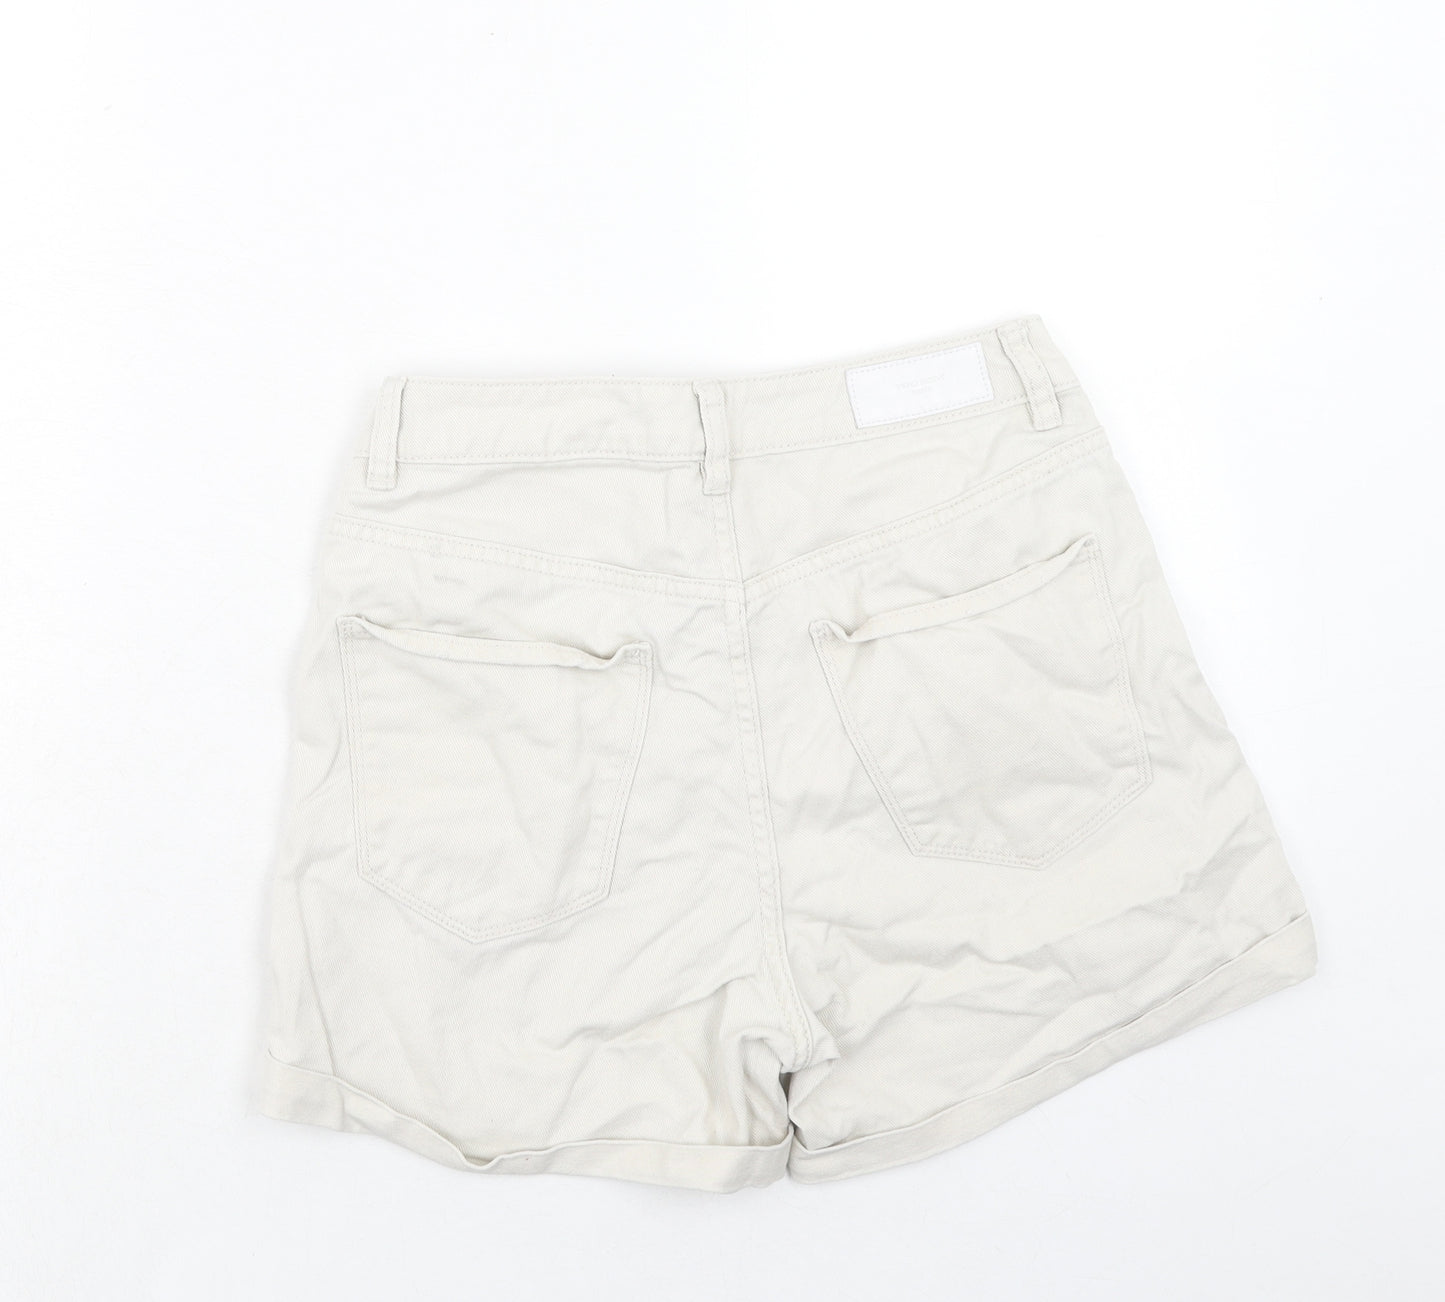 VERO MODA Womens Ivory Cotton Chino Shorts Size S Regular Zip